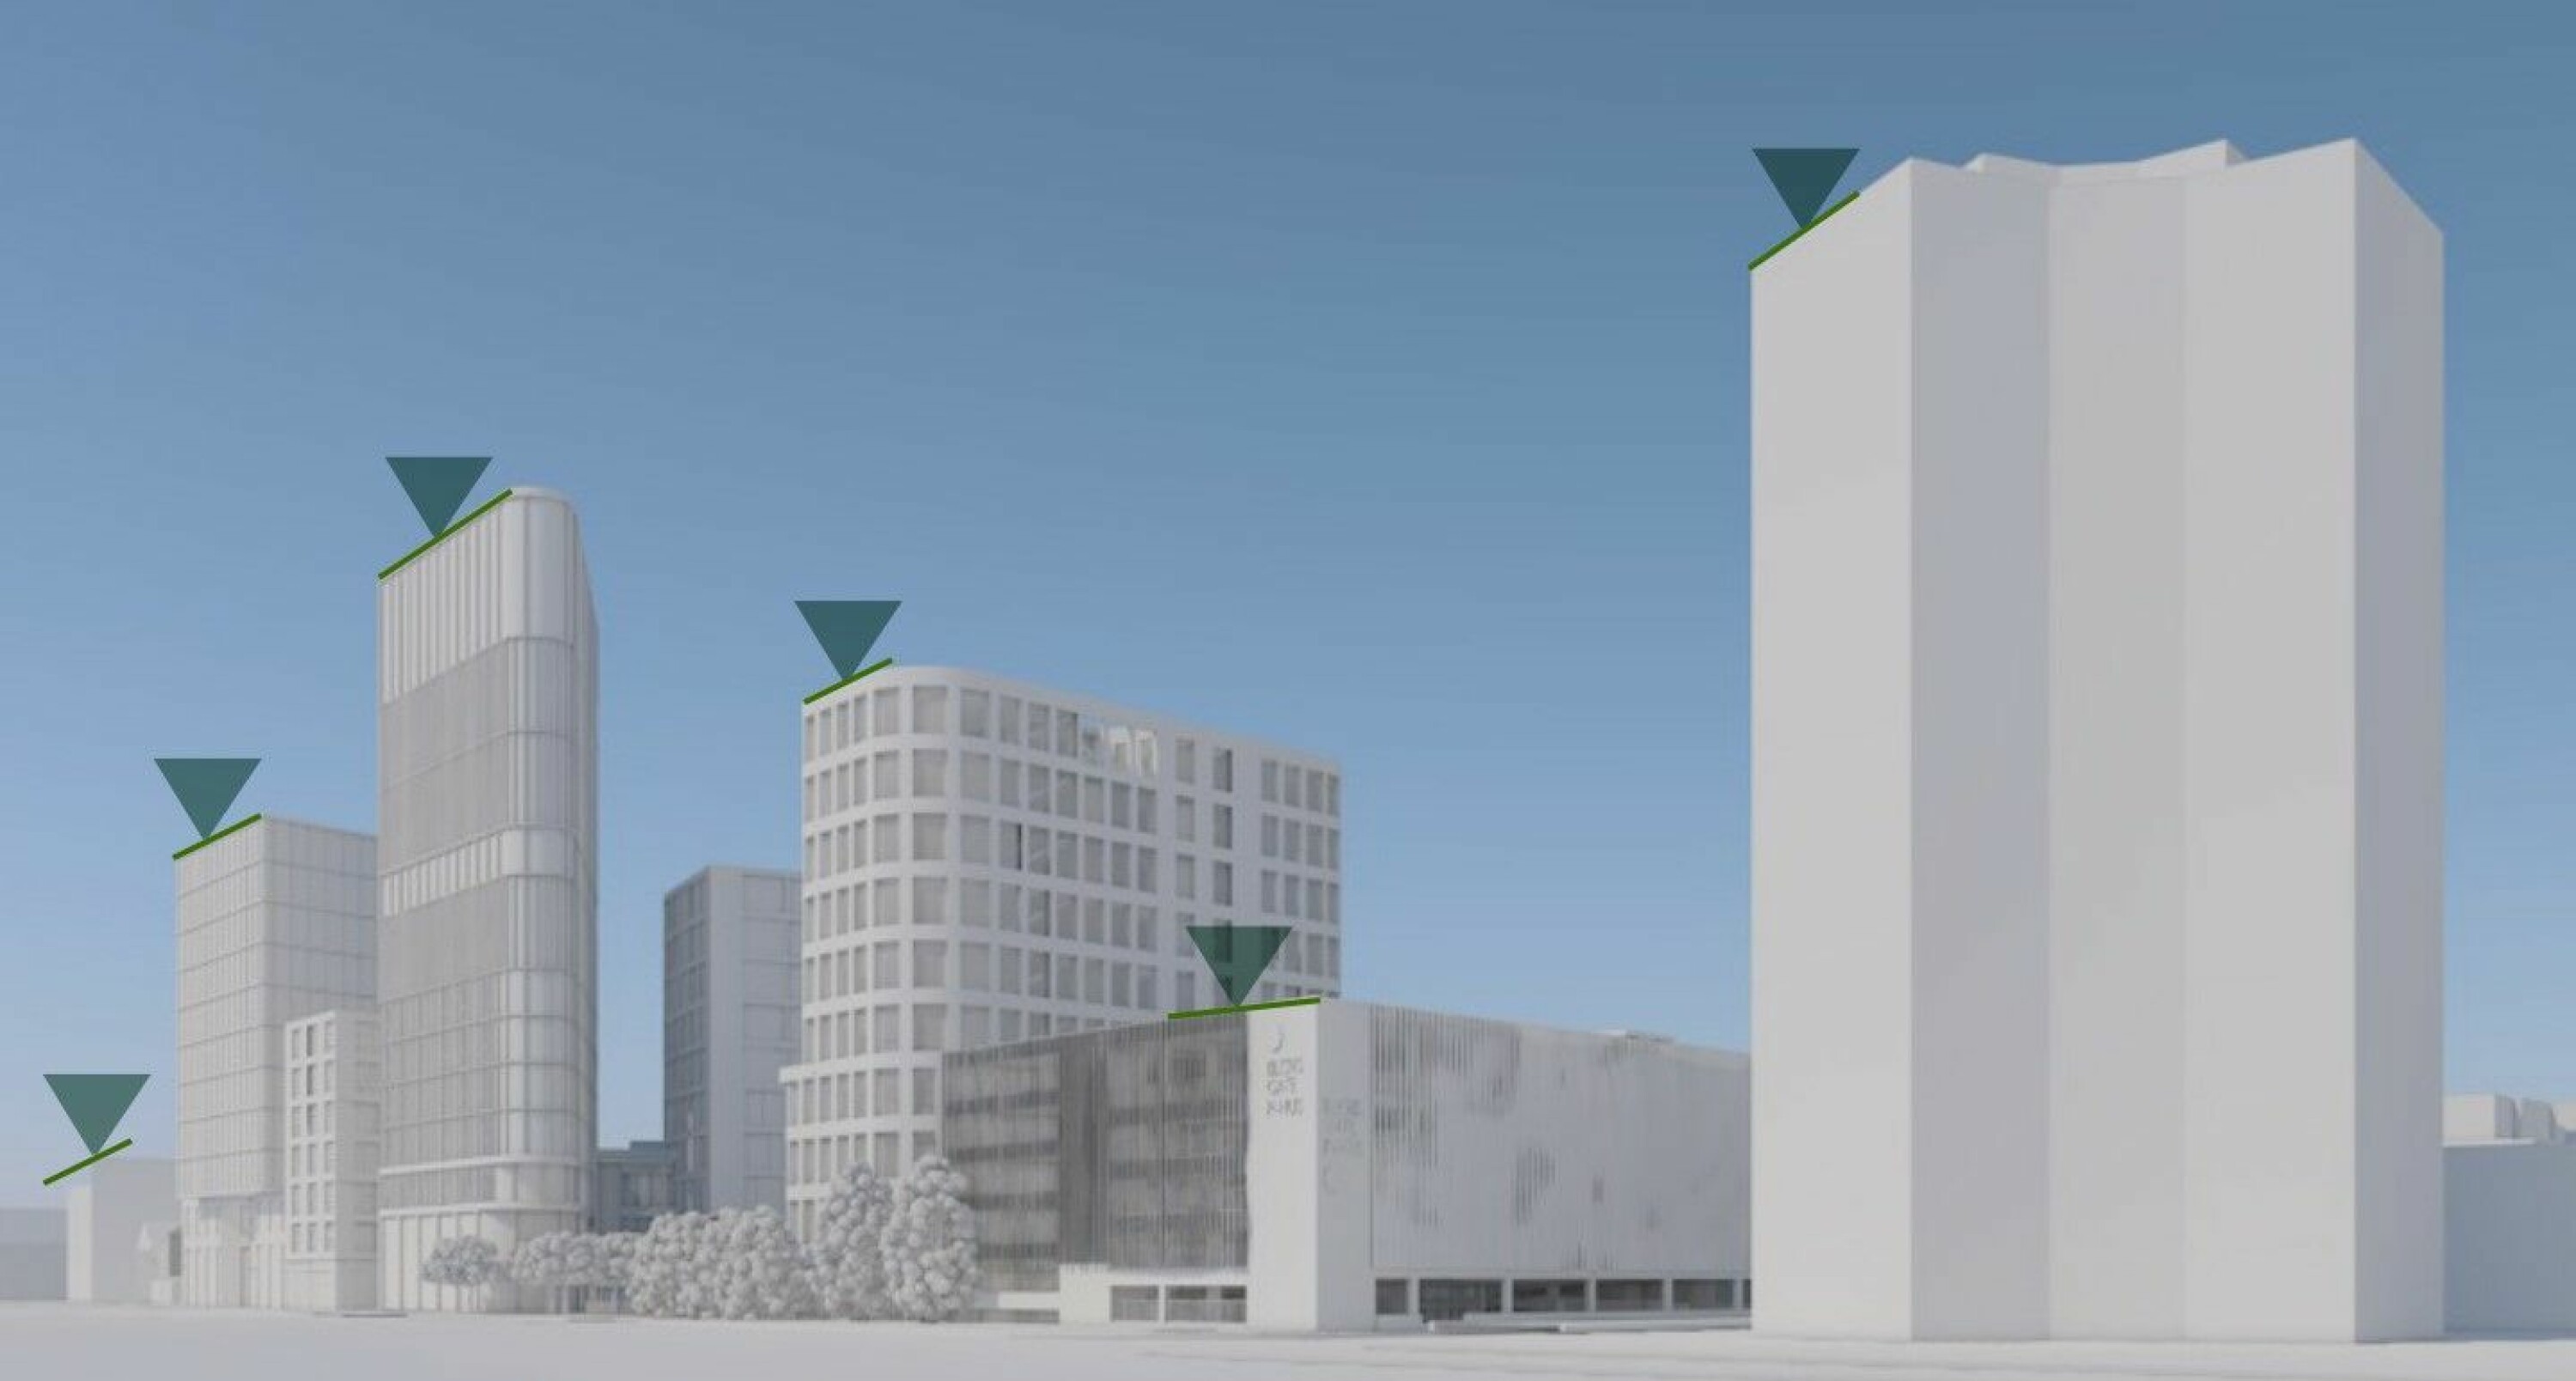 HØYDEPROFIL: En skisse fra mulighetsstudien viser hvordan Strømsø United ser for seg høyden på bygningsmassen sett fra Bjørnstjerne Bjørnsons gate